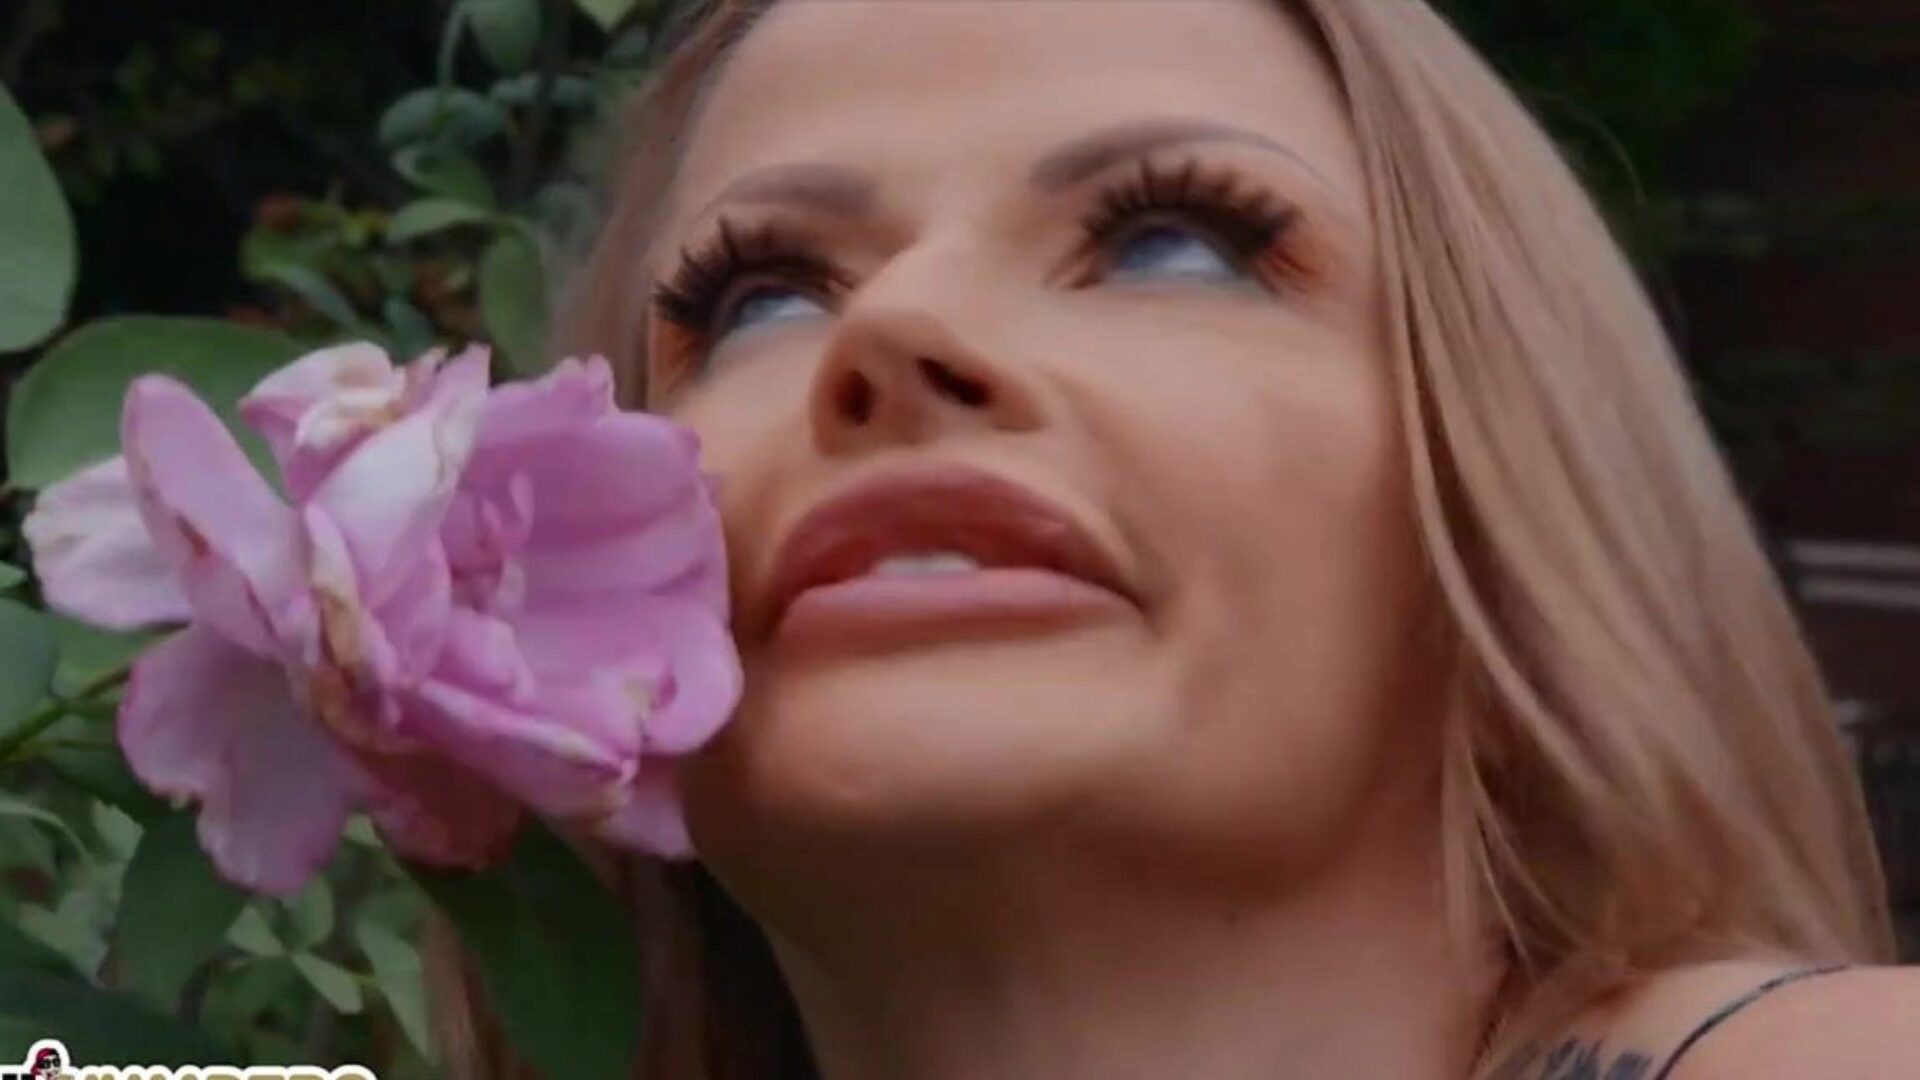 ליל הומפרס - ציצים גדולים סקסיים ג'וסלין ג'יימס אוהב לדפוק את גמד הדשא שלה